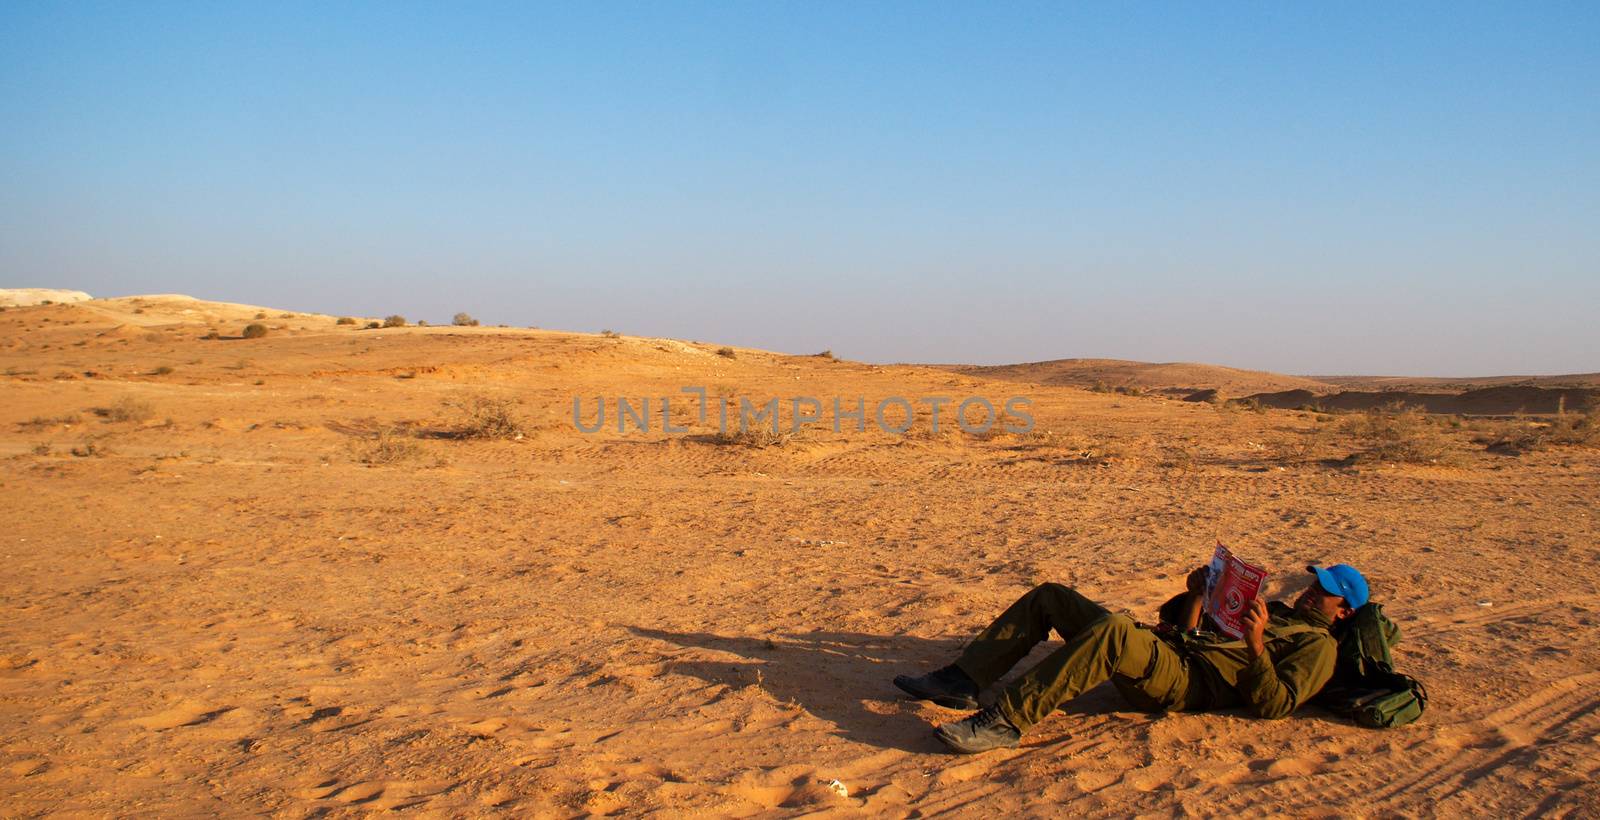 Israeli soldiers excersice in a desert by javax